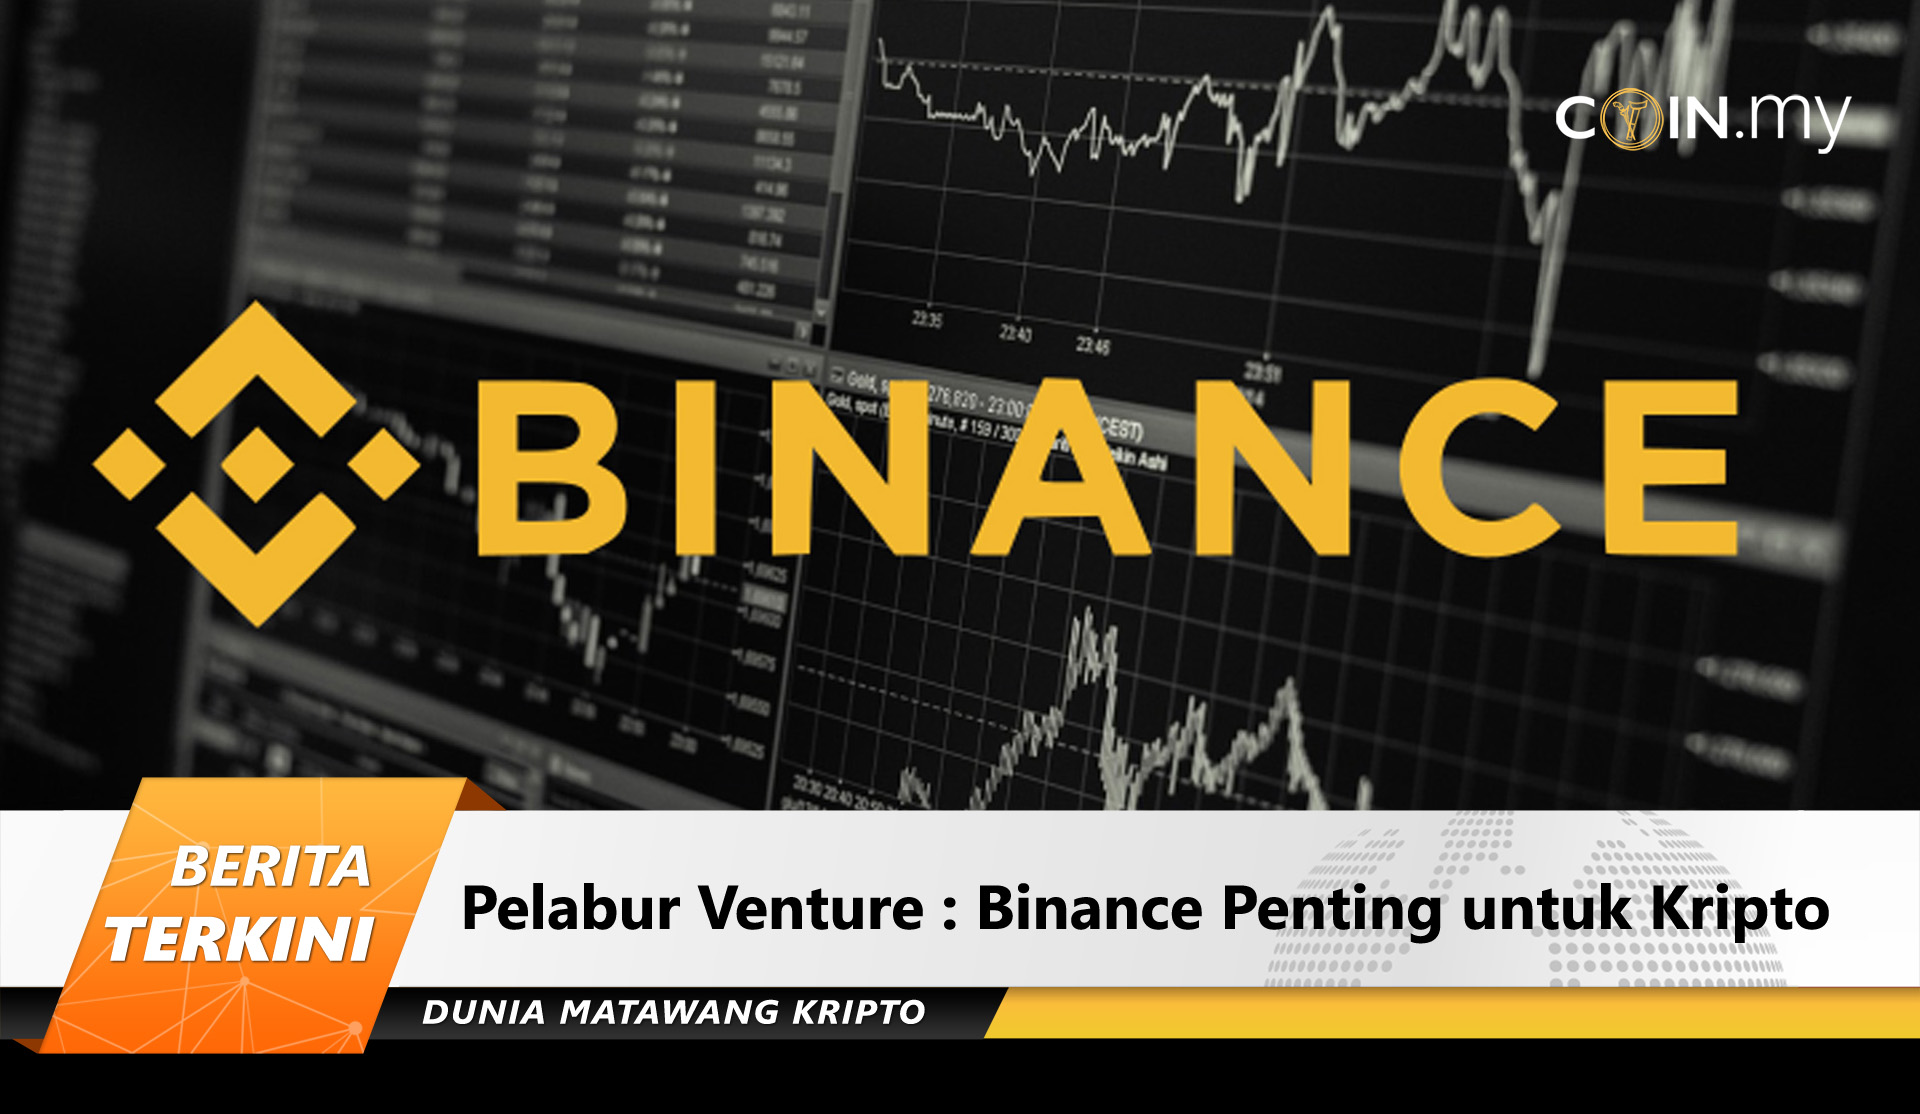 Pelabur Venture : Binance Penting untuk Kripto - Coin.my